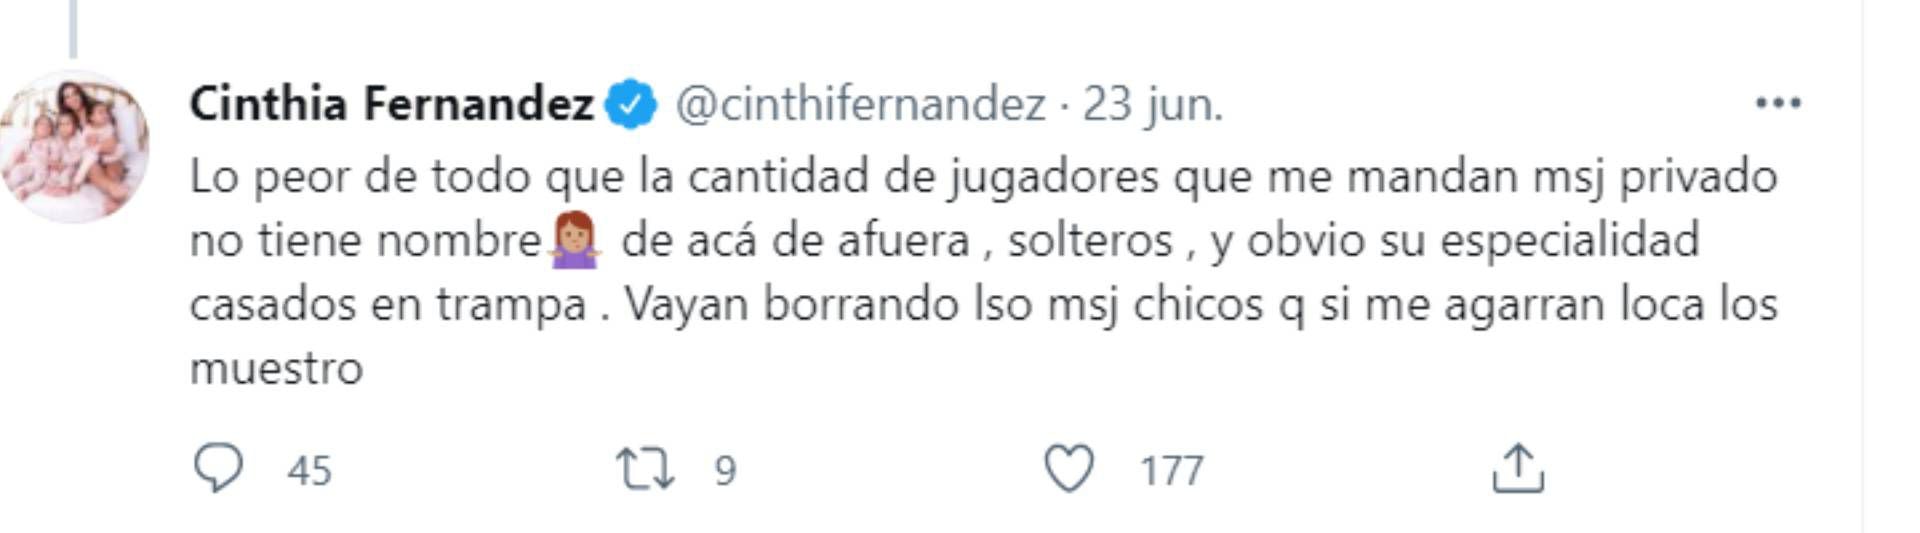 La advertencia de Cinthia Fernández